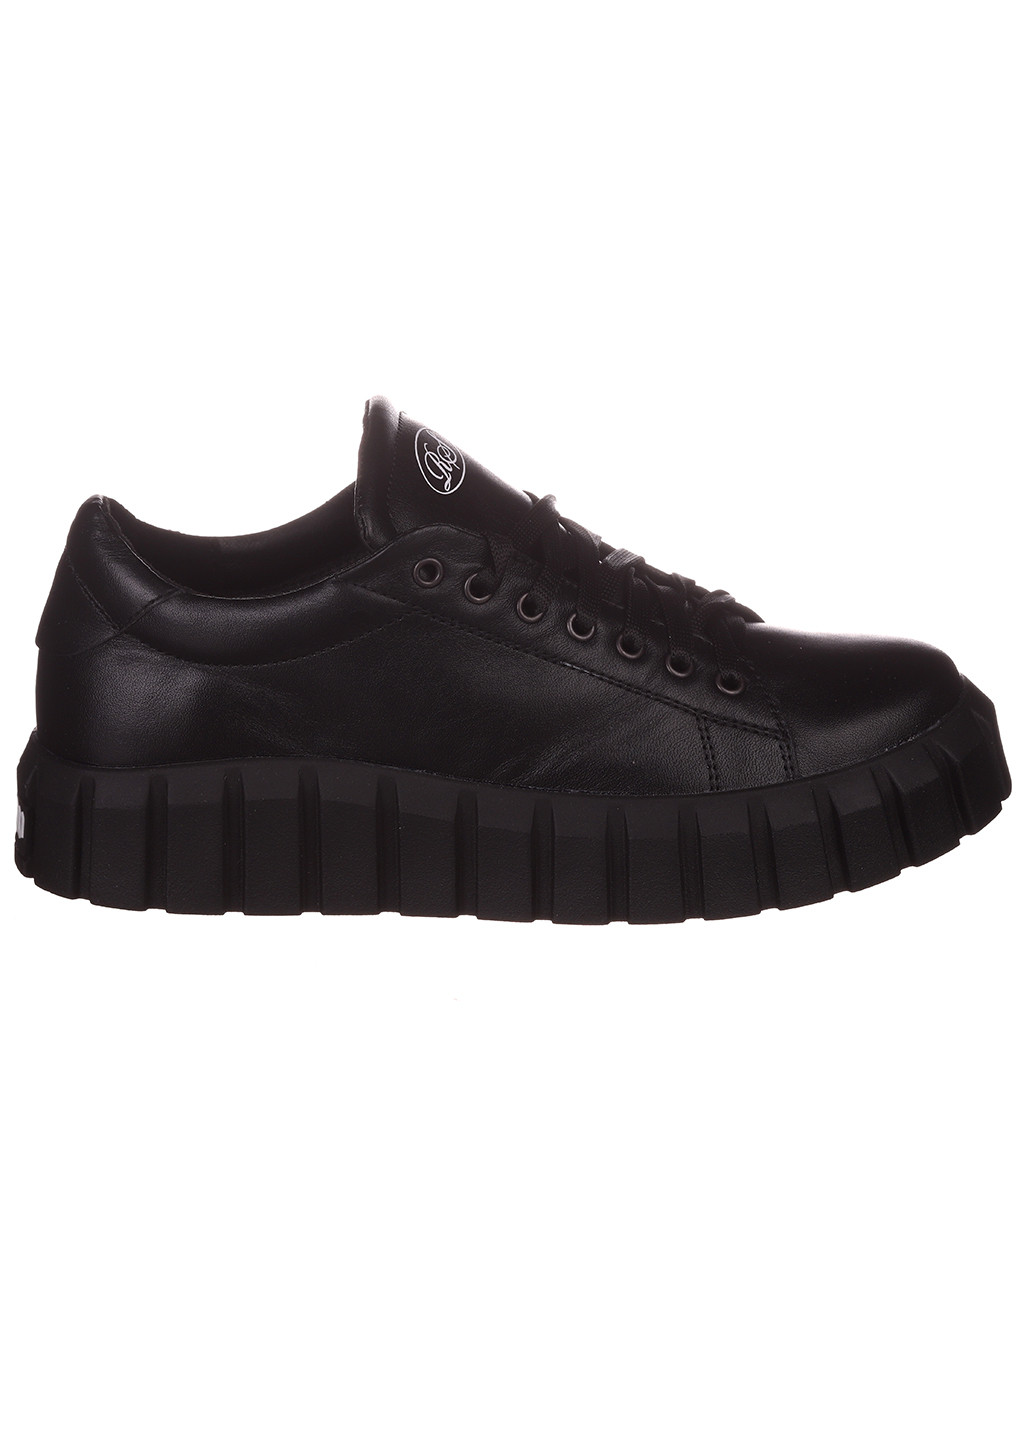 Черные демисезонные женские кроссовки 49-01 Road style